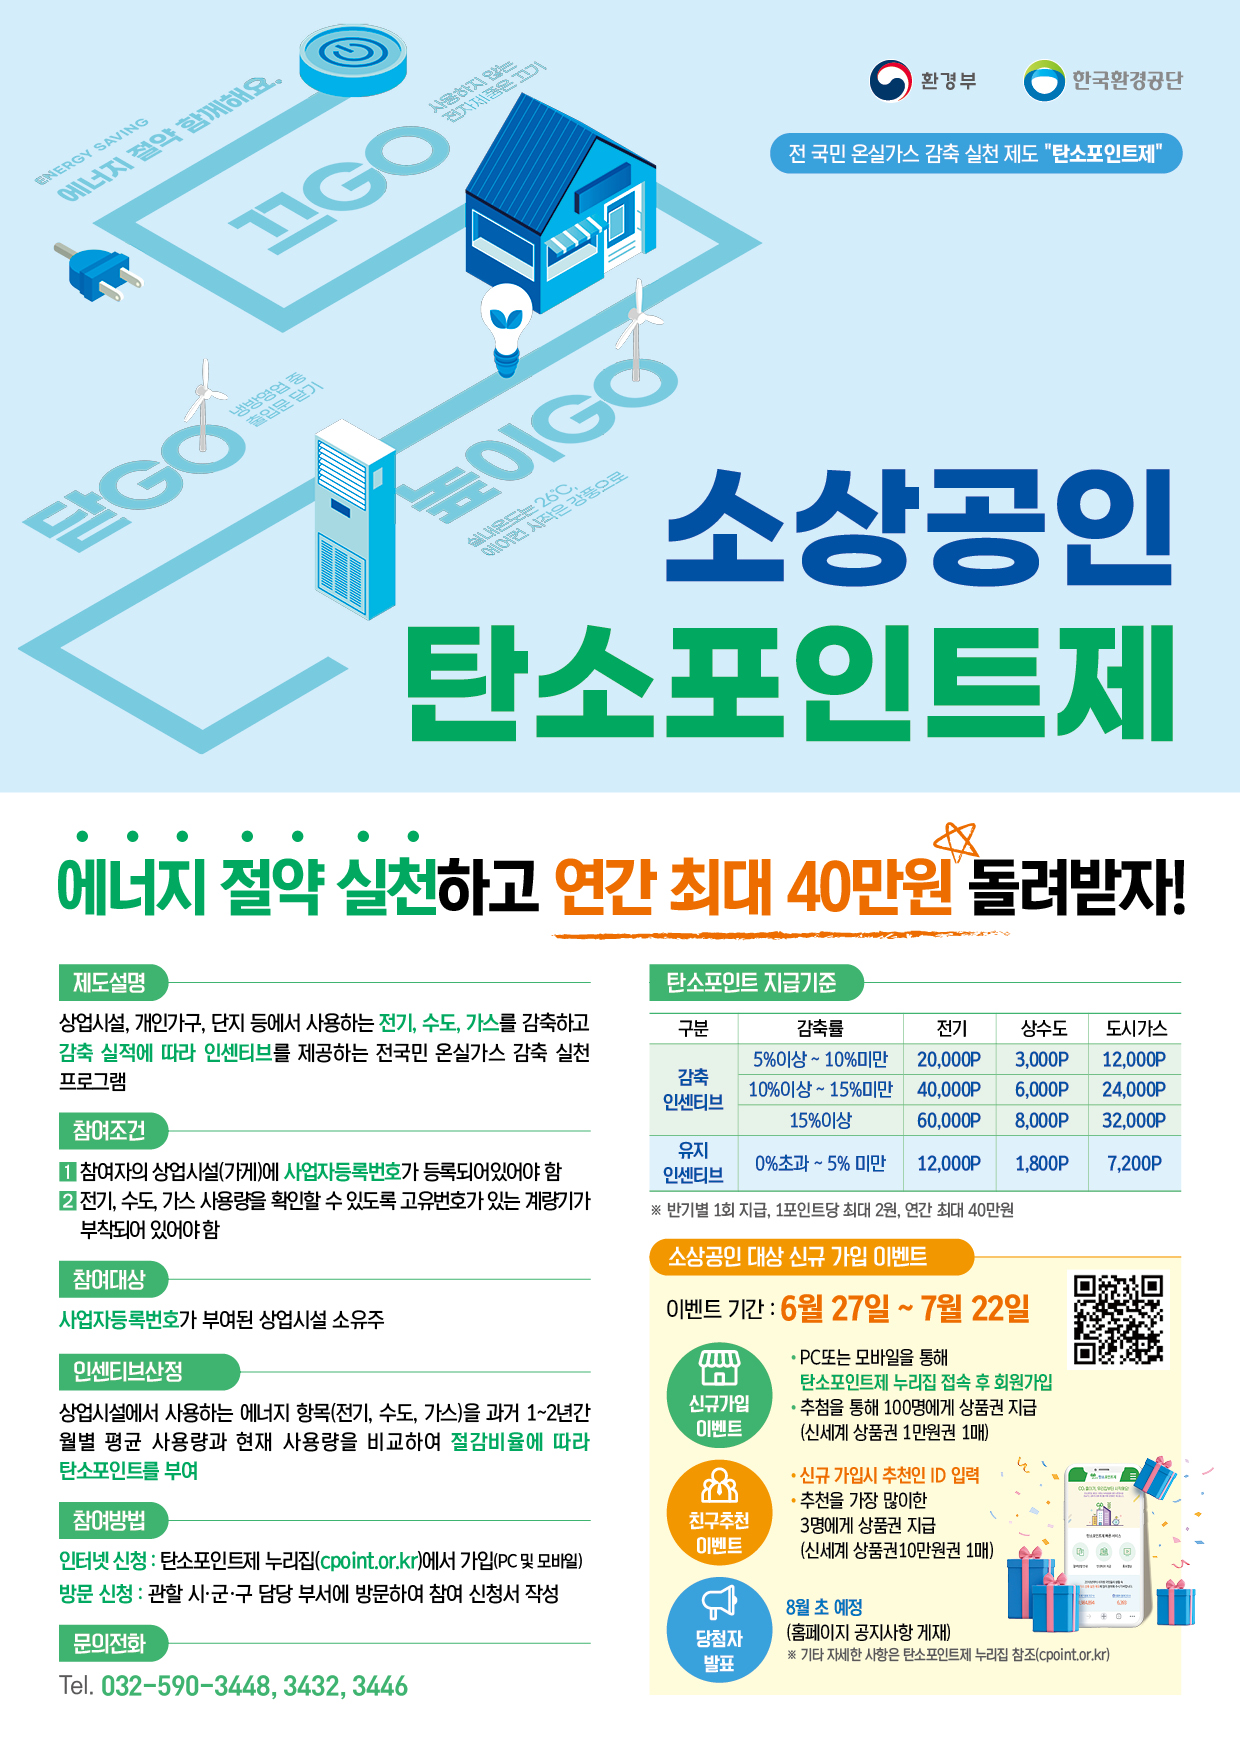 탄소포인트제 소상공인 신규참여자 대상 이벤트 개최 알림 첨부이미지